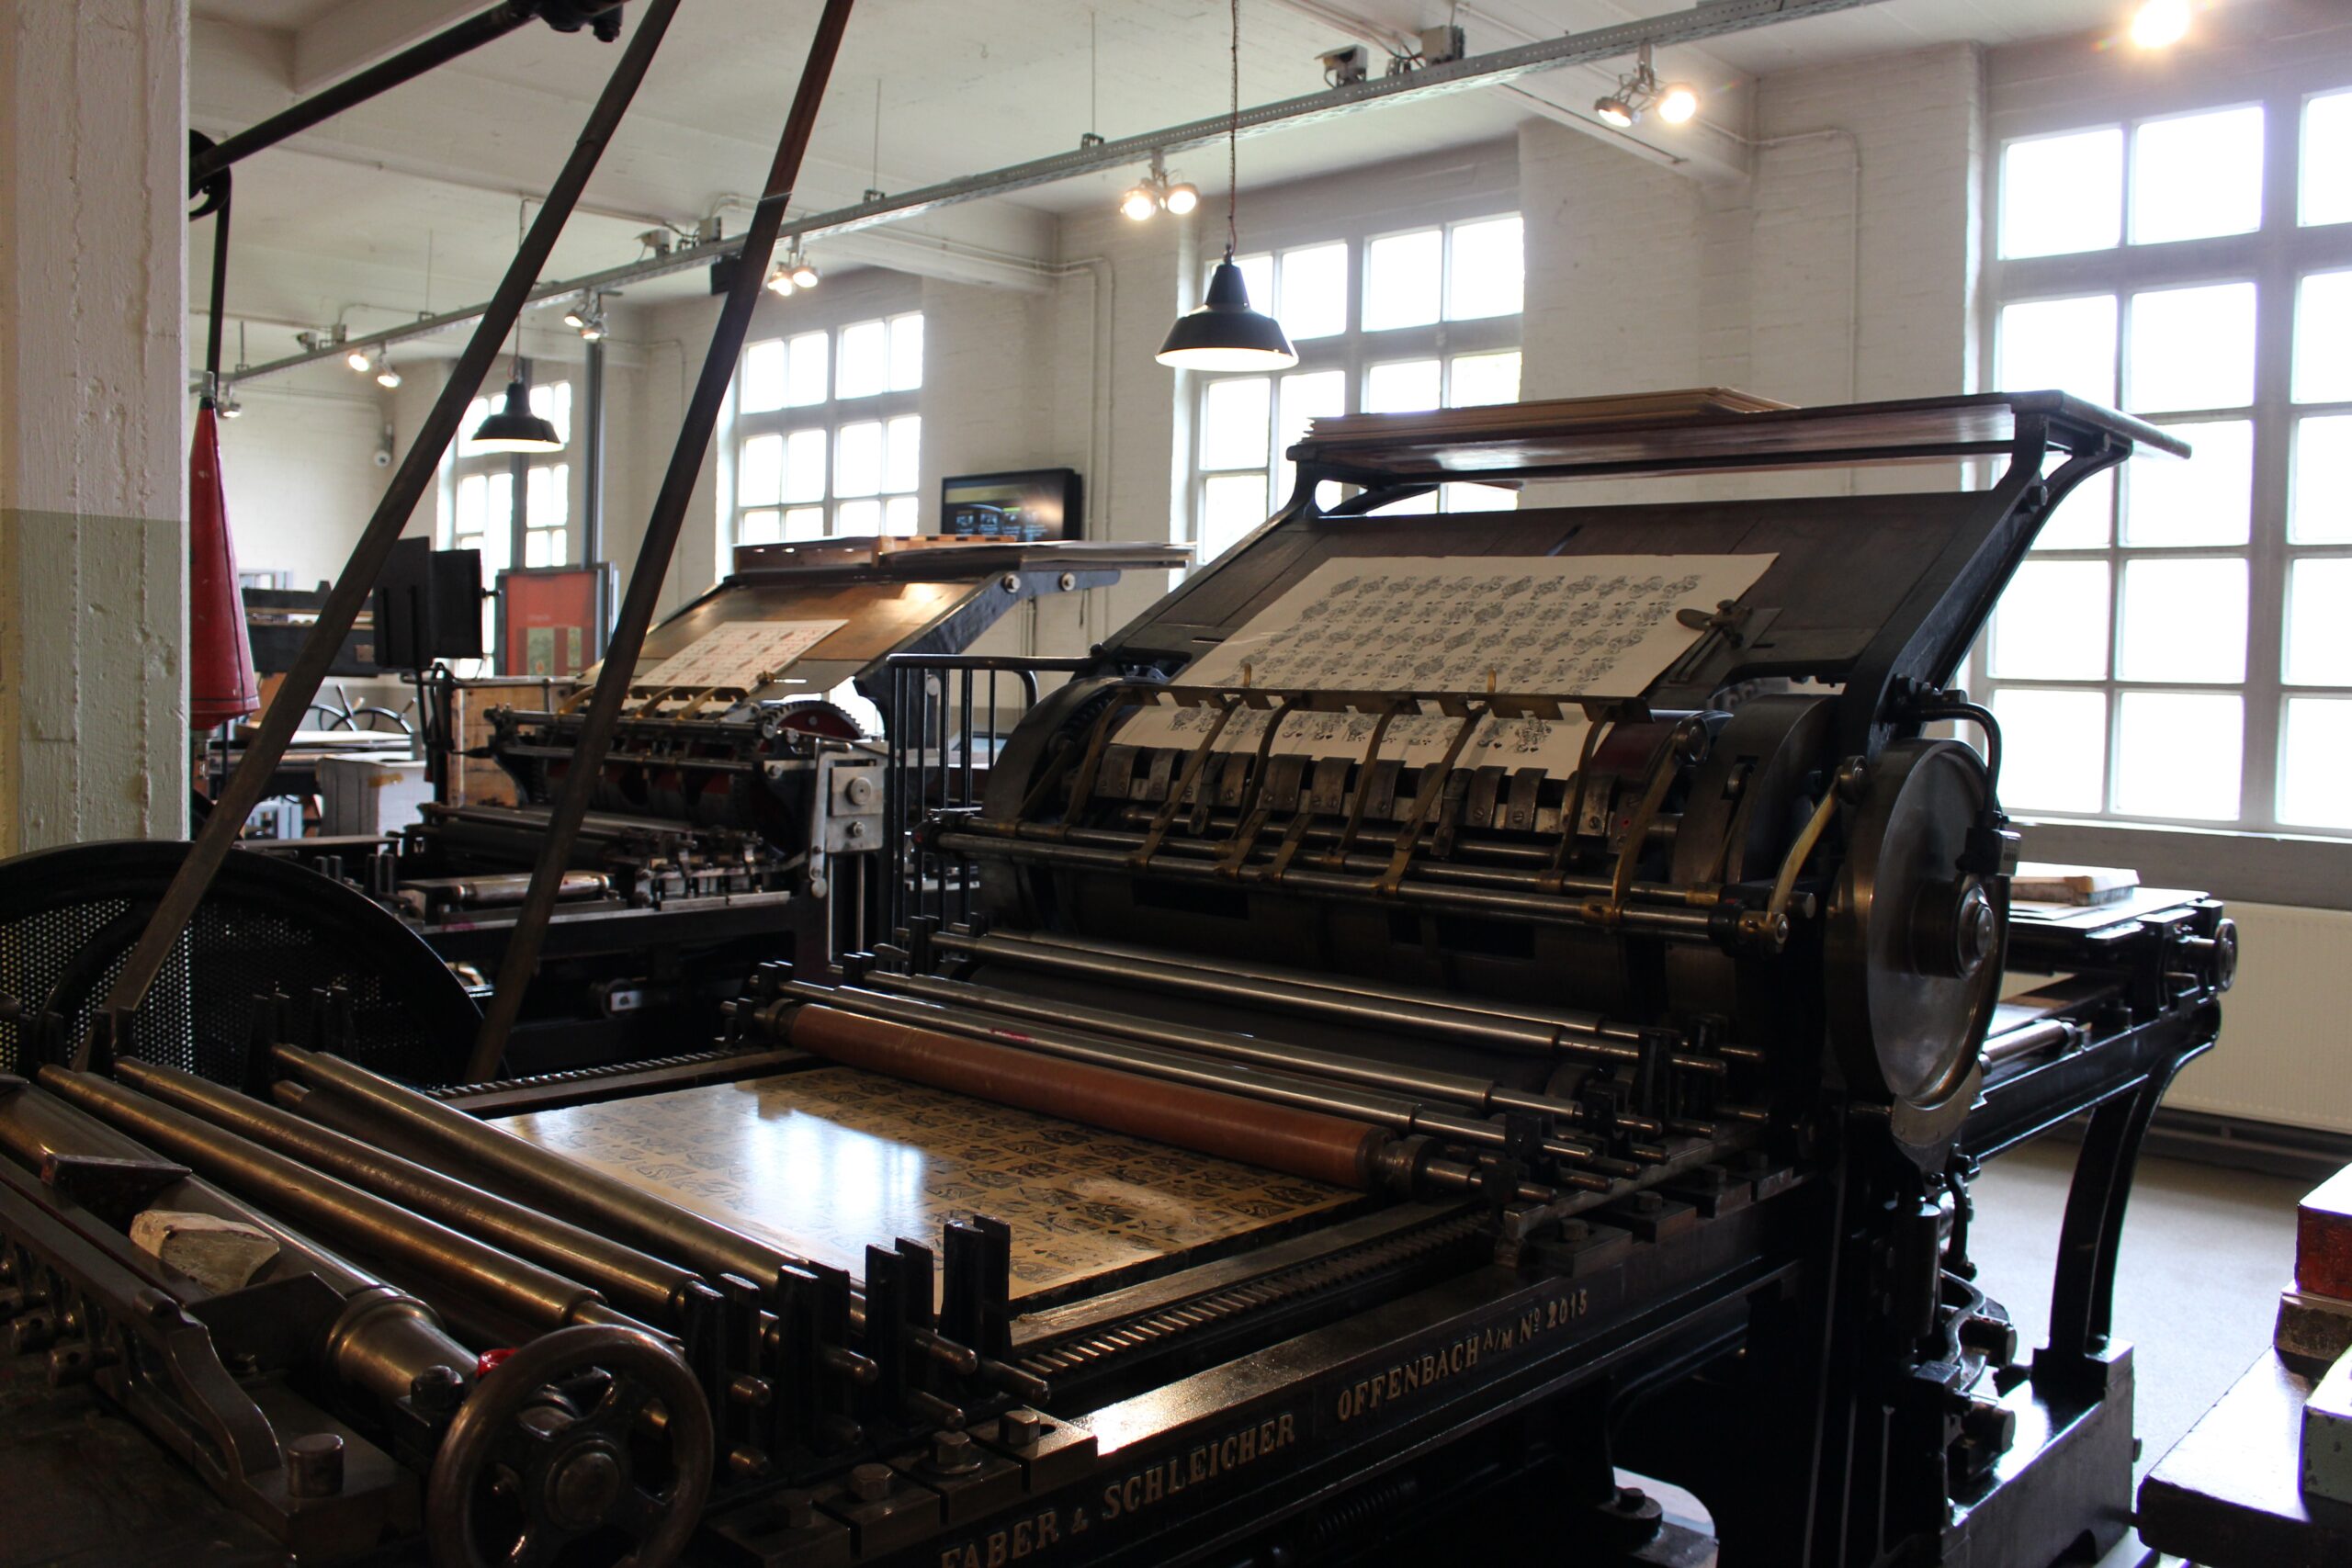 An offset print press